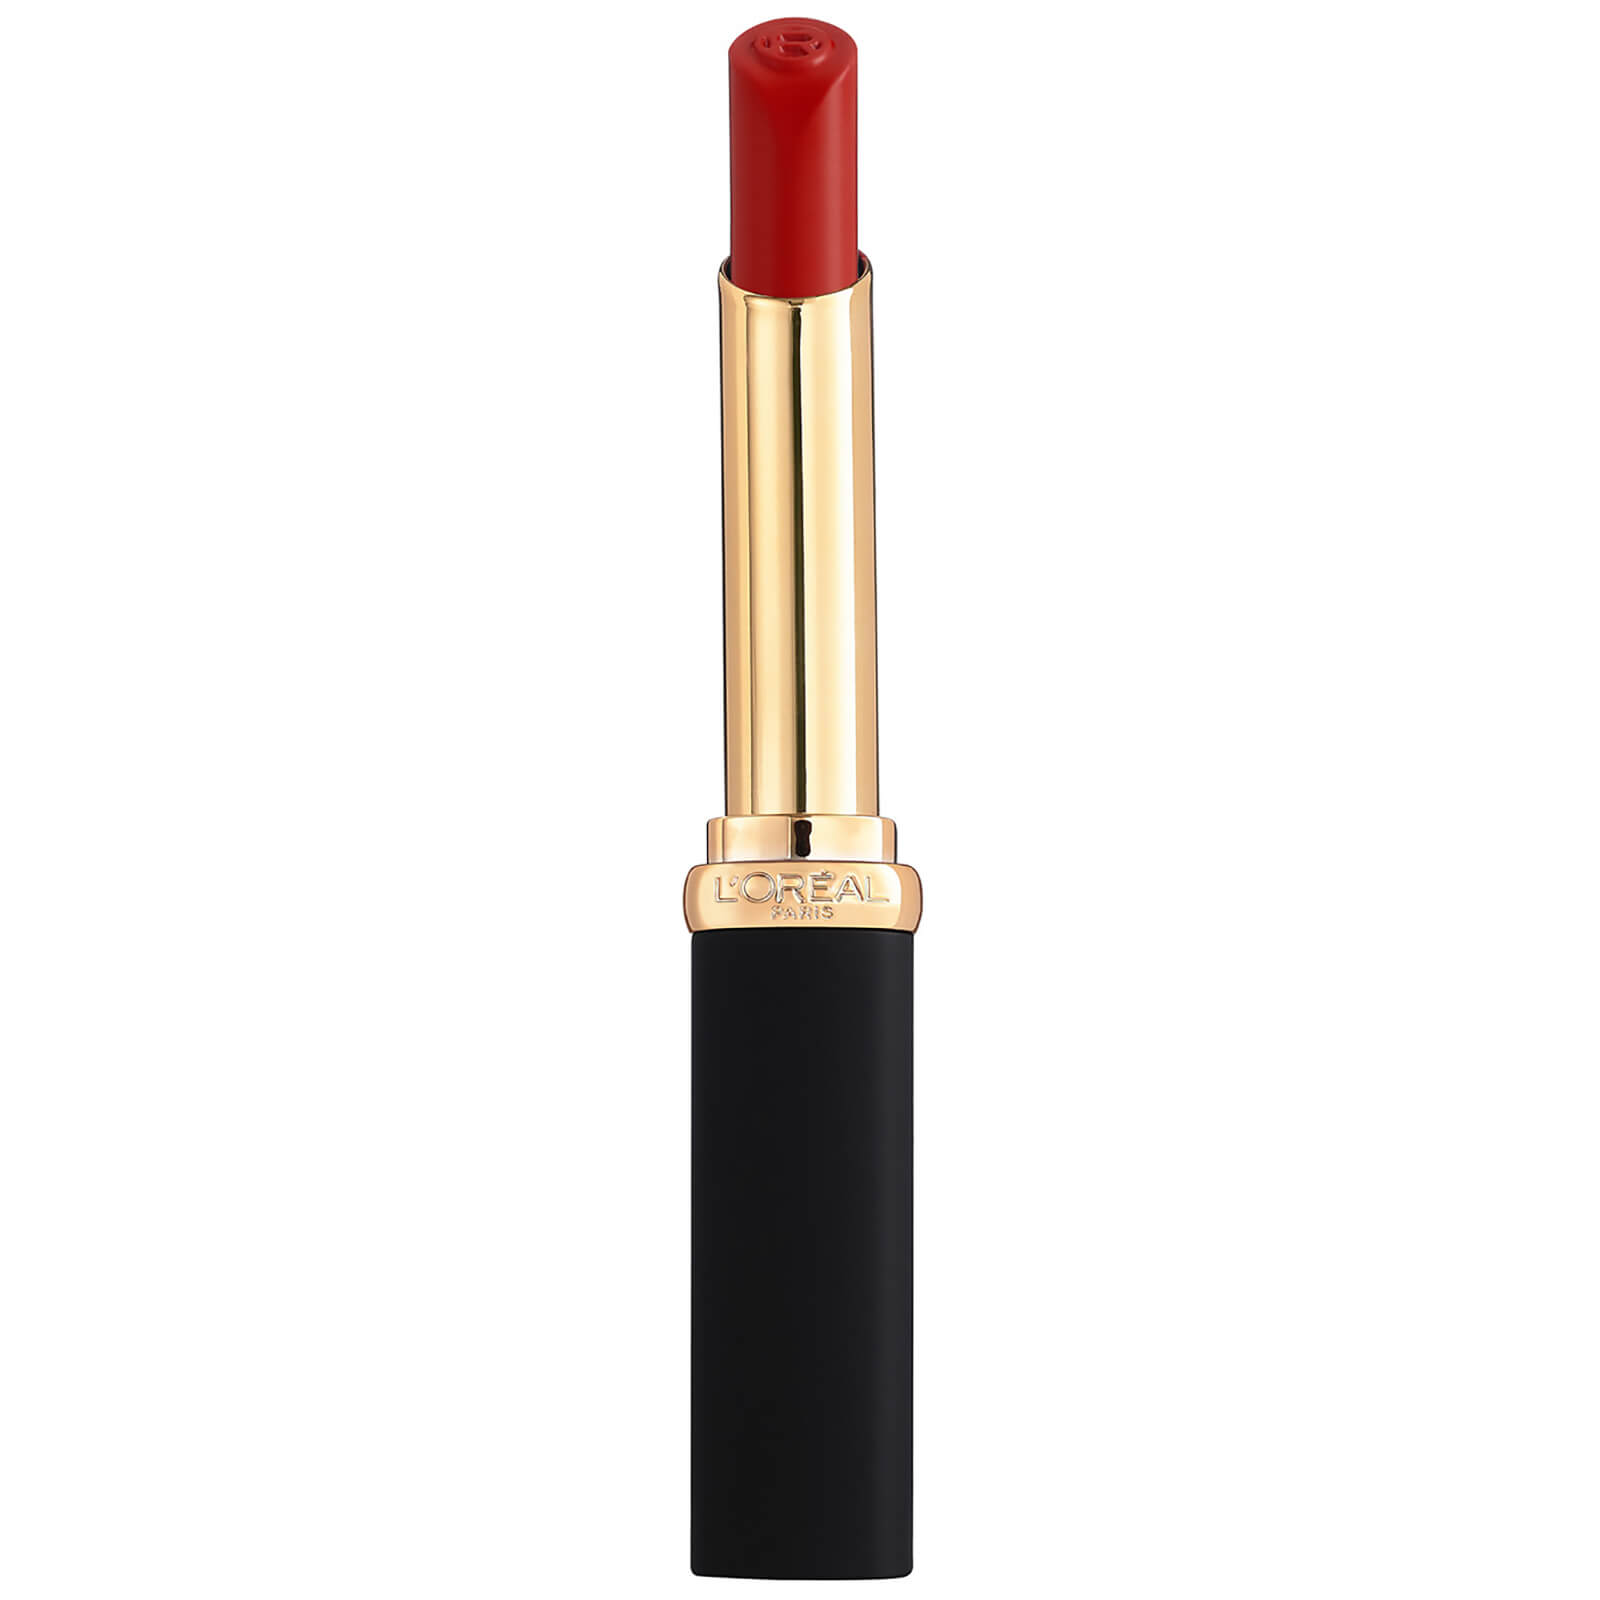 L'oréal Paris L'oreal Paris Colour Riche Intense Volume Matte Lipstick 25g (various Shades) - Rouge Determinance